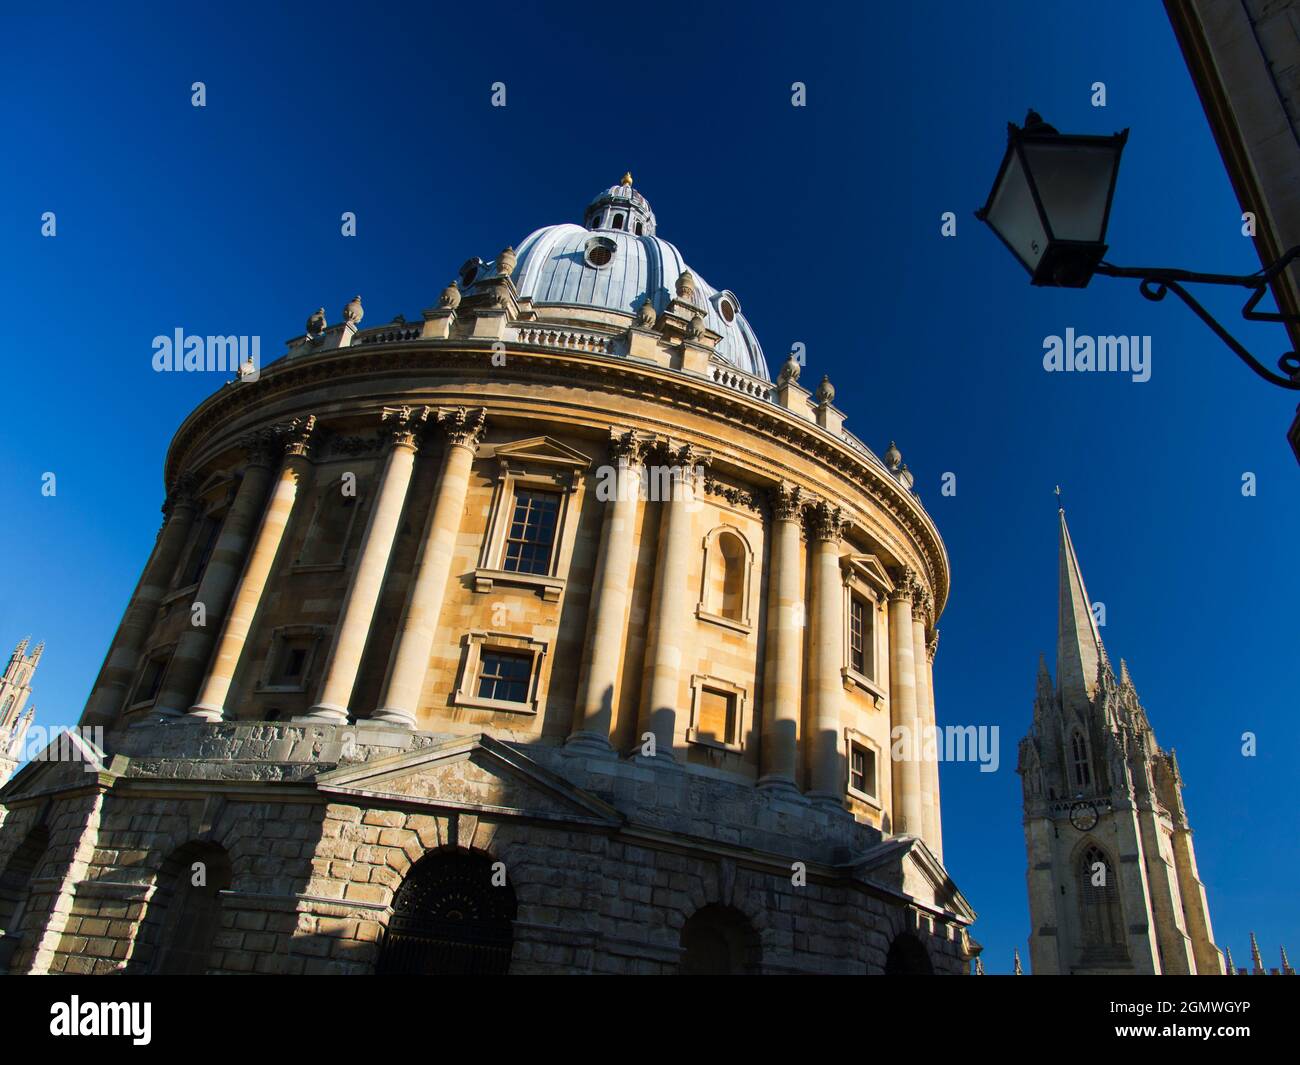 Radcliffe Square liegt im Herzen des historischen Oxford. Im Mittelpunkt steht die runde Radcliffe Camera, dieses markante Gebäude der Oxford Univer Stockfoto